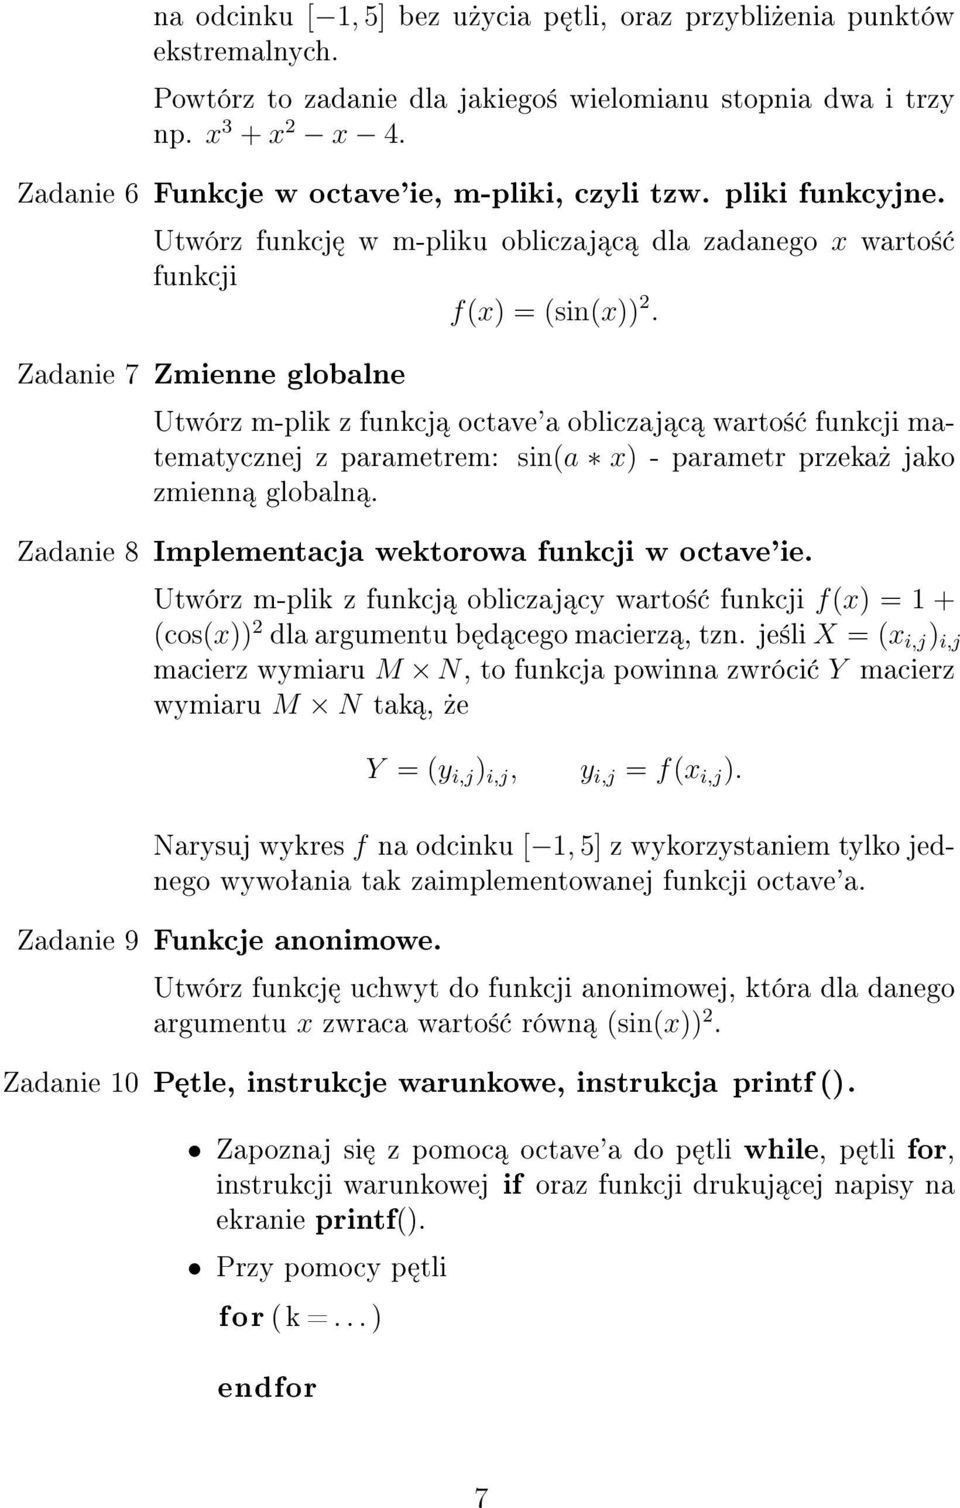 Zadanie 7 Zmienne globalne Utwórz m-plik z funkcj octave'a obliczaj c warto± funkcji matematycznej z parametrem: sin(a x) - parametr przeka» jako zmienn globaln.